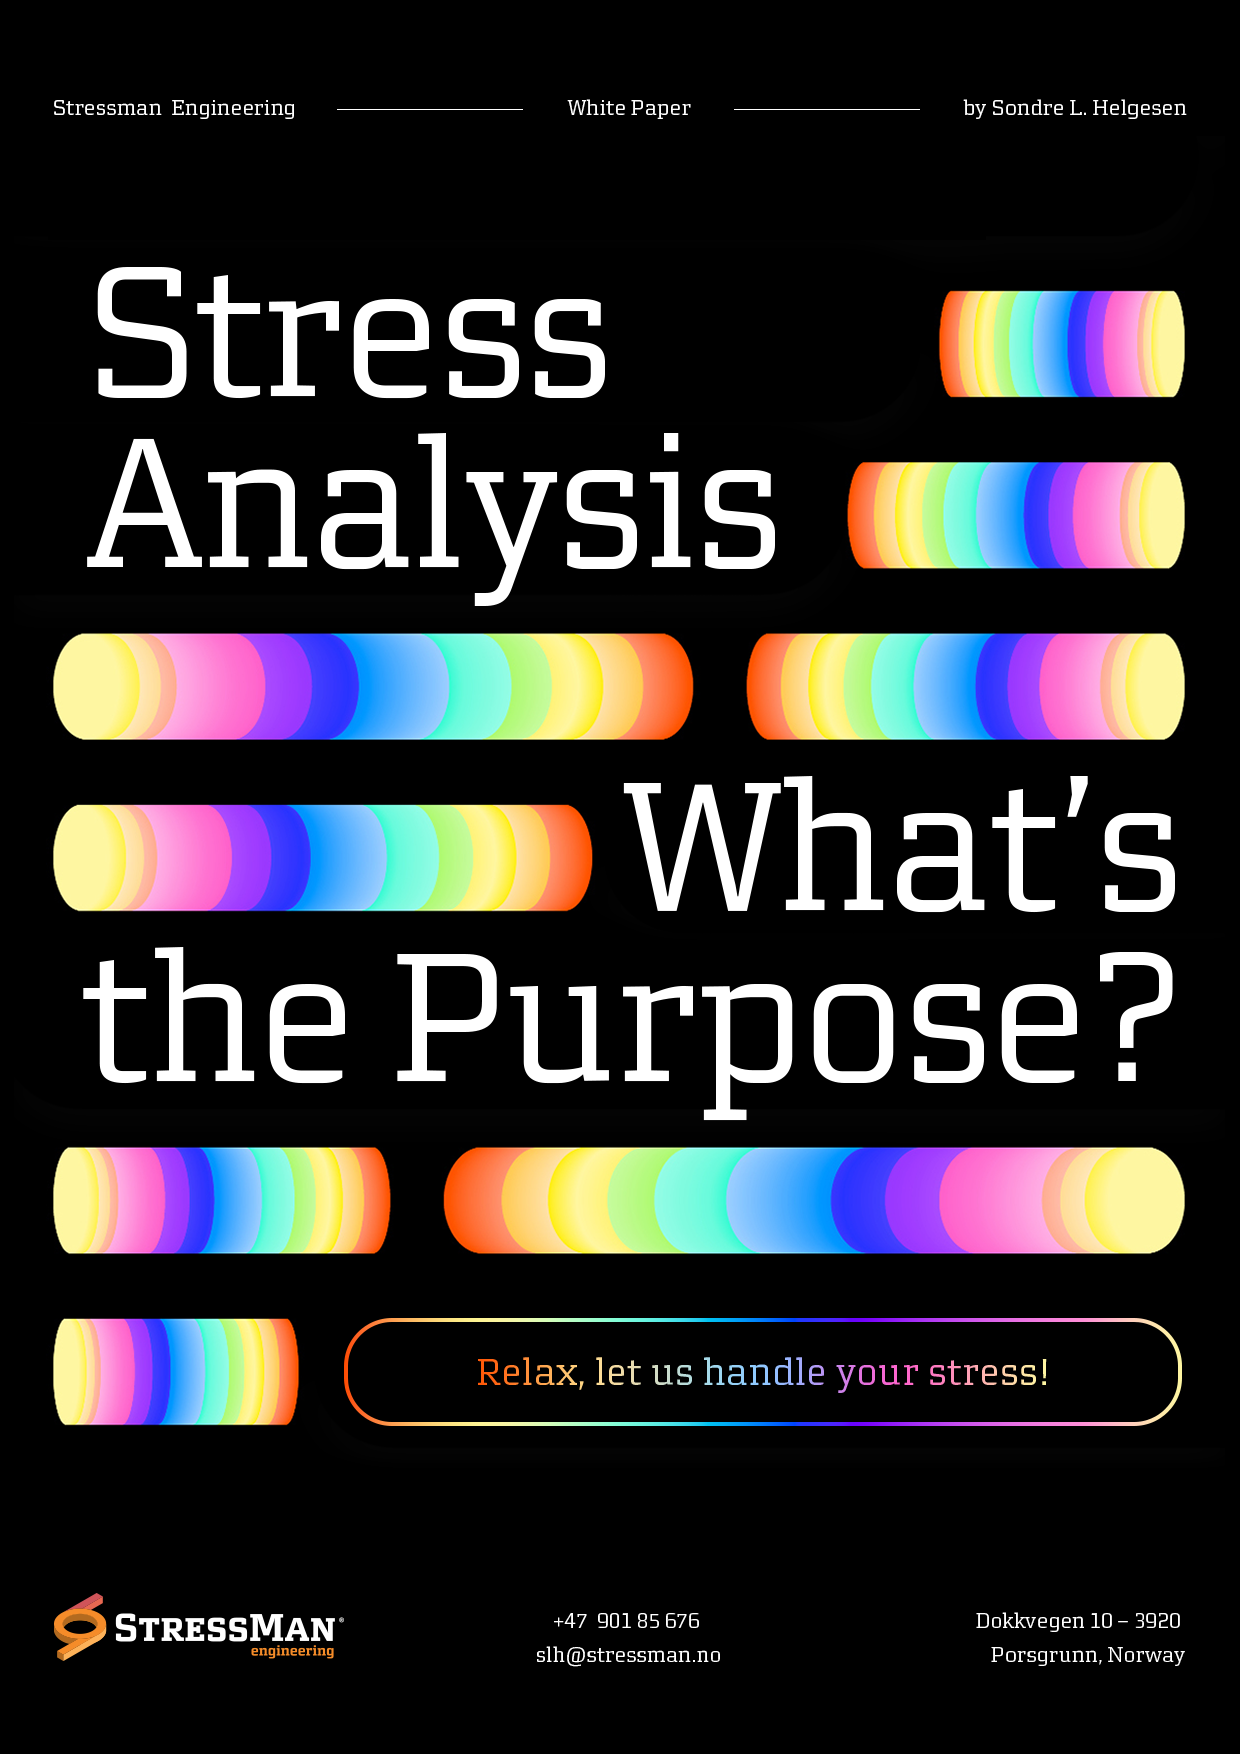 SME stress analysis